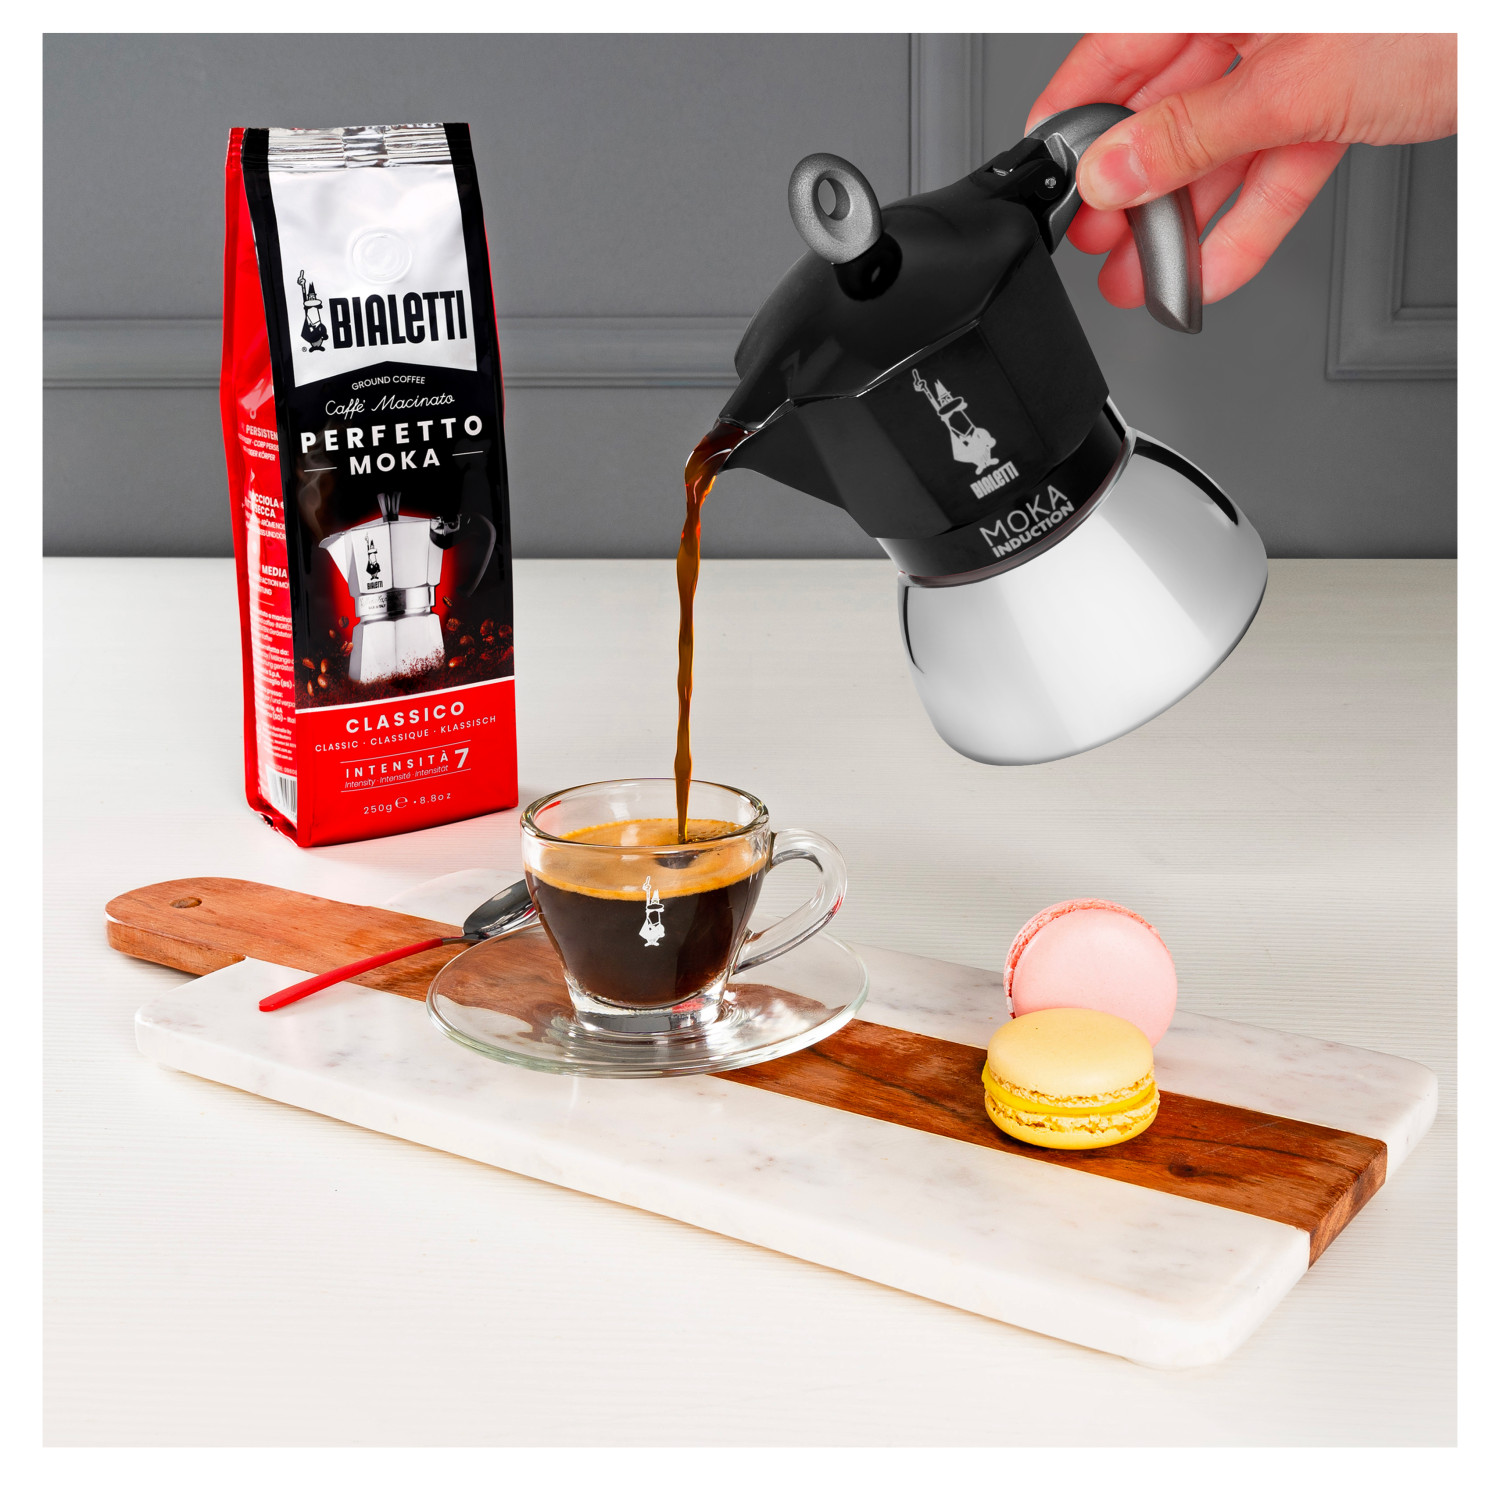 BIALETTI New Espressokocher Tassen 6 Moka BLACK Induction Schwarz/Silber für